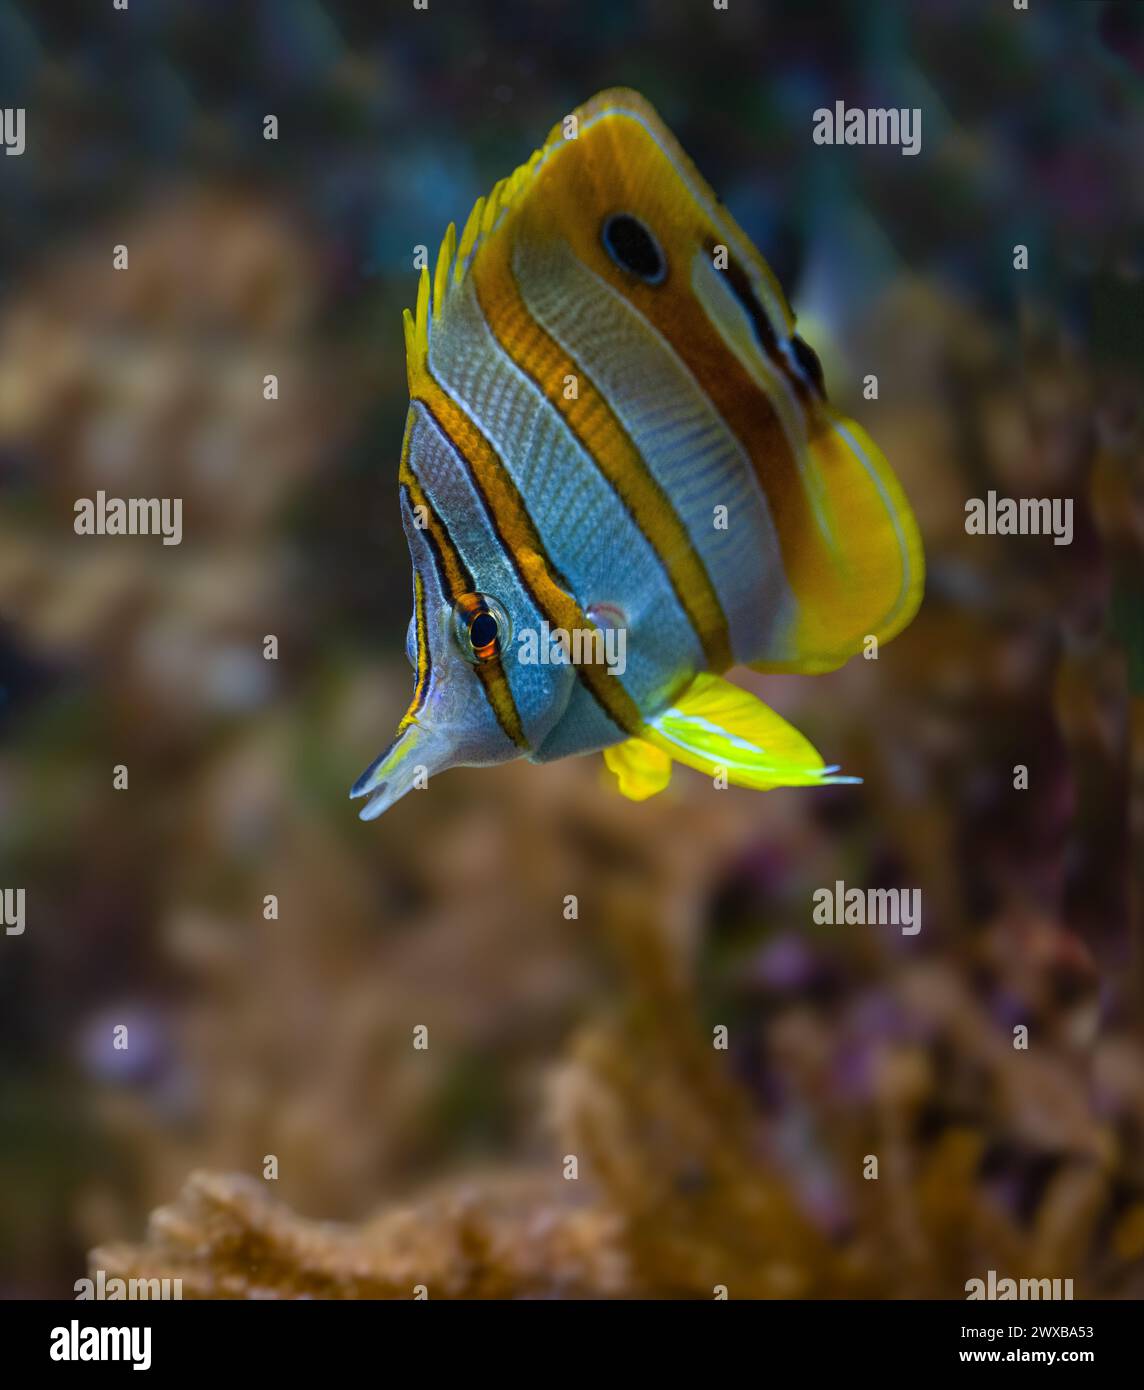 Il pesce farfalla copperband (Chelmon rostratus), noto anche come pesce corallino dal becco, si trova nelle barriere coralline sia nell'Oceano Pacifico che nell'Oceano Indiano. Foto Stock